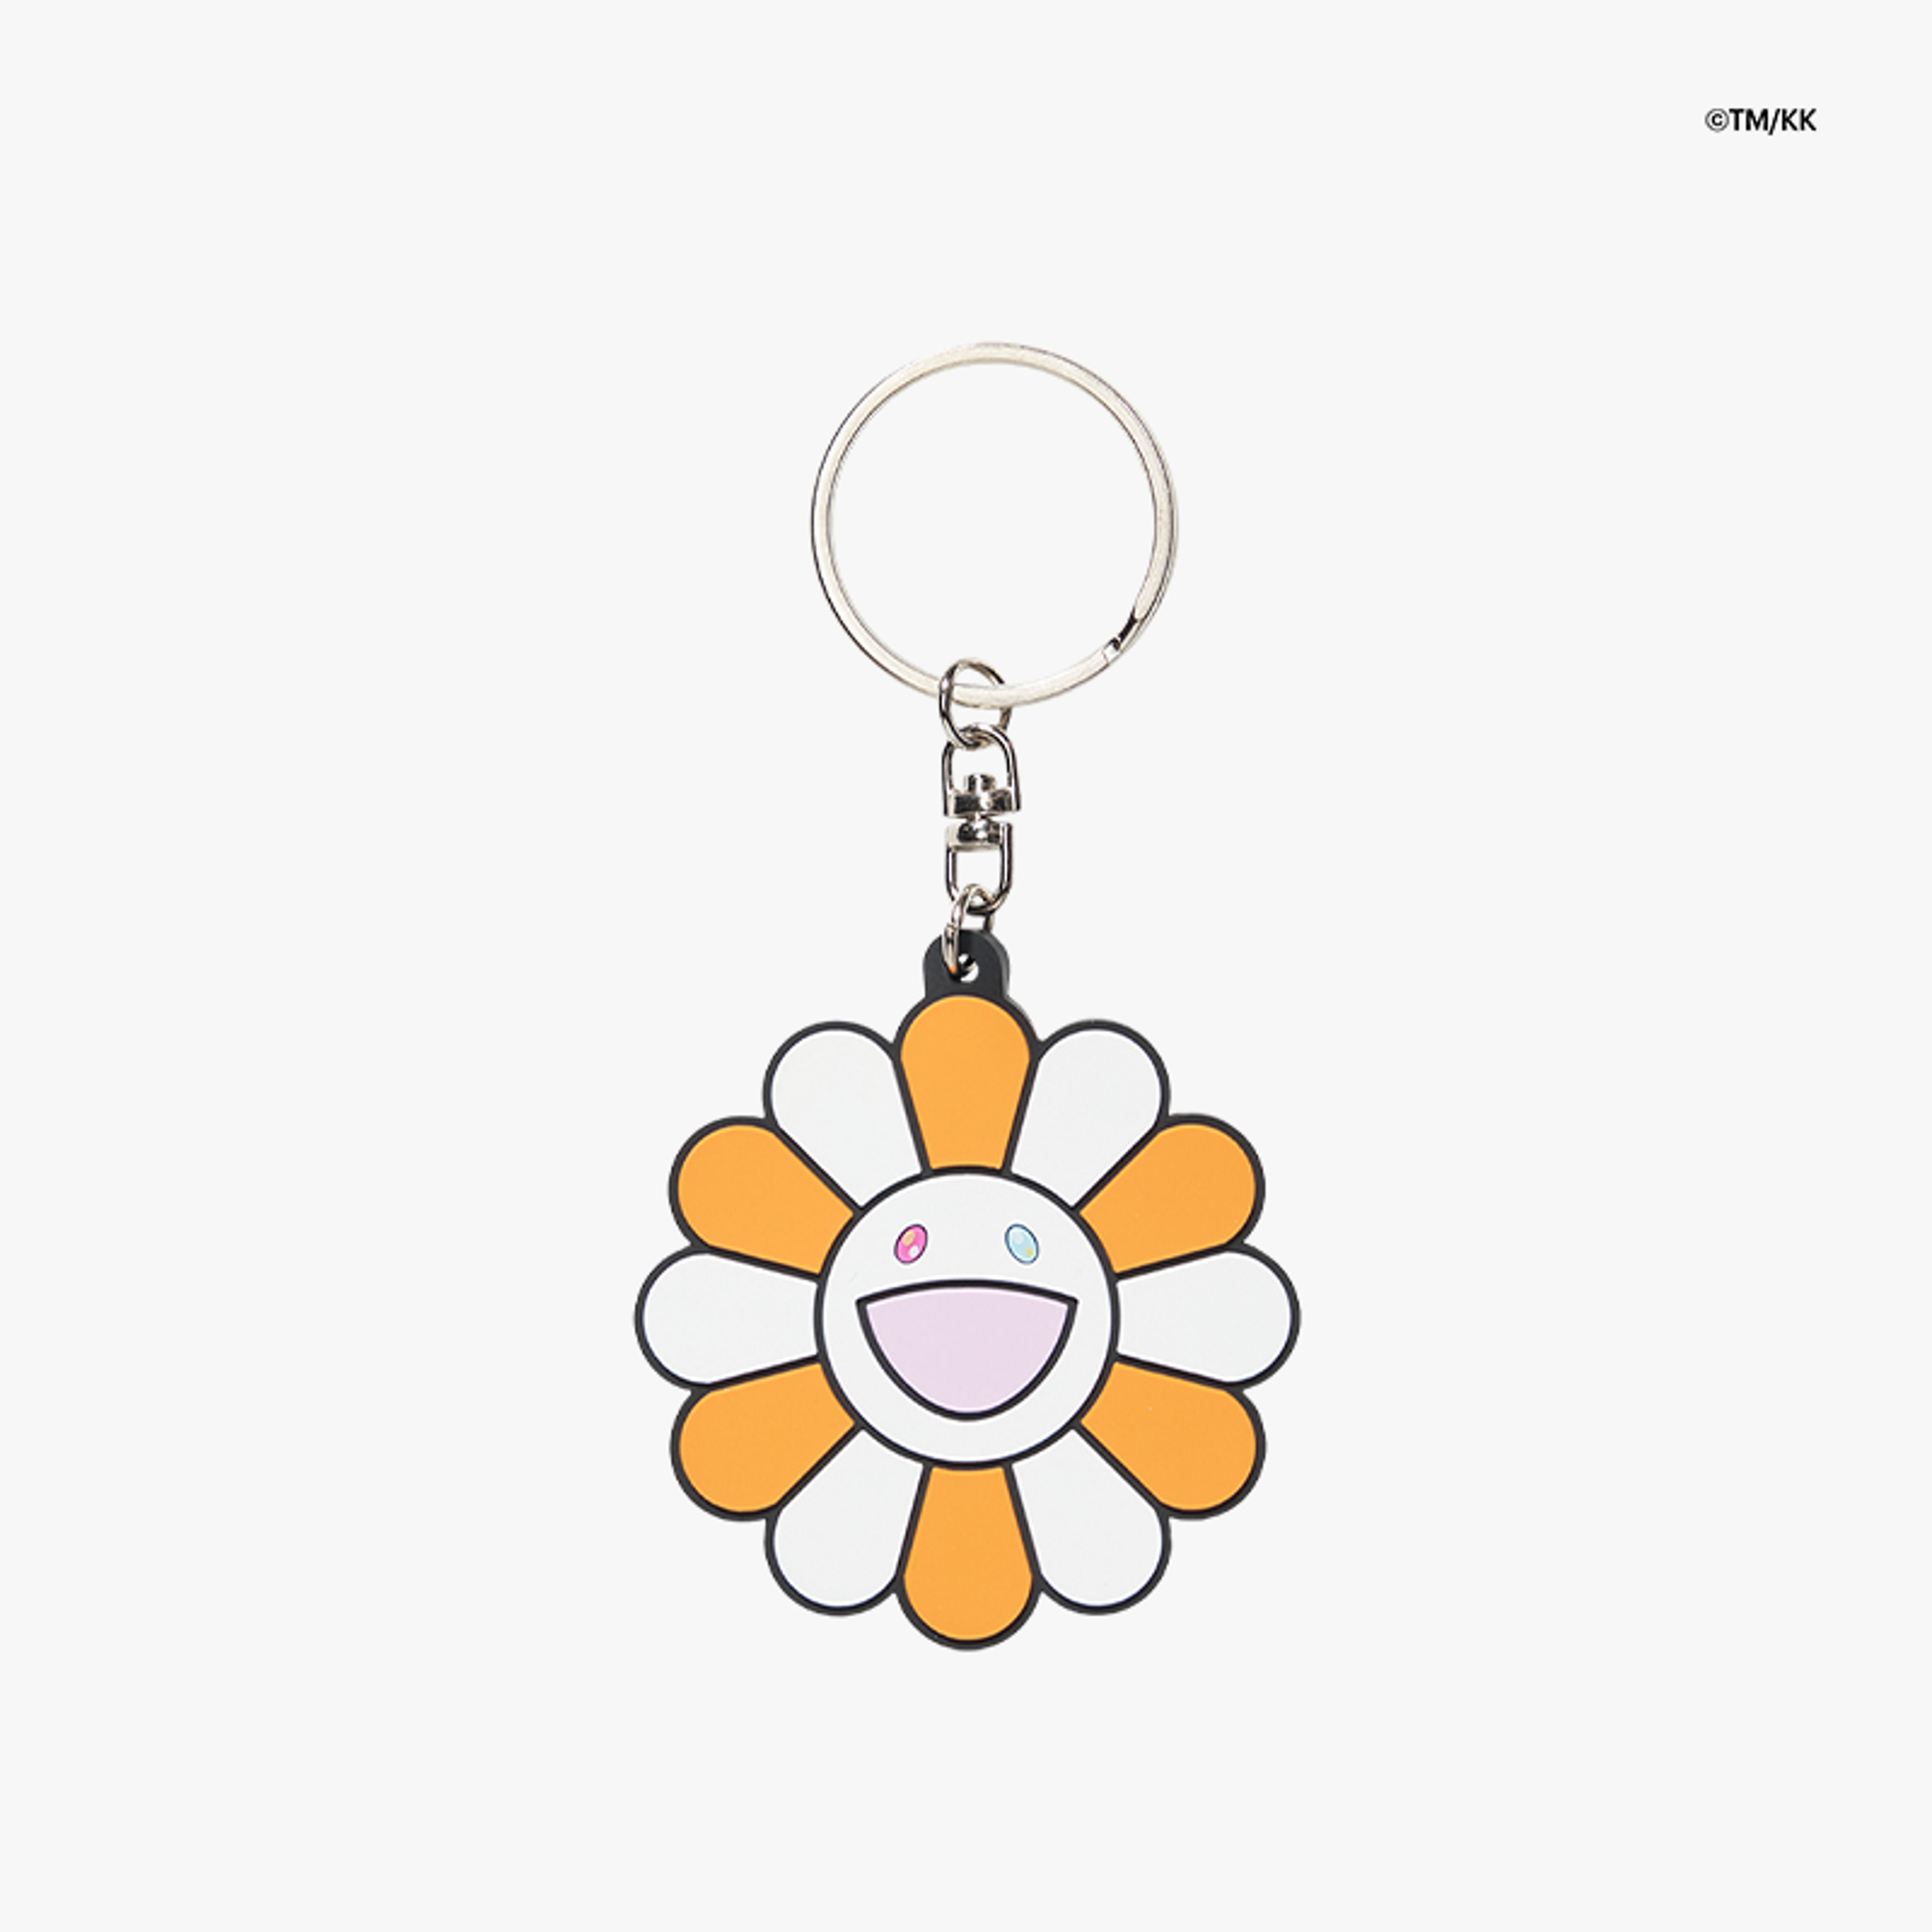 ©TM/KK Flower Rubber Keyring Orange & White - OS